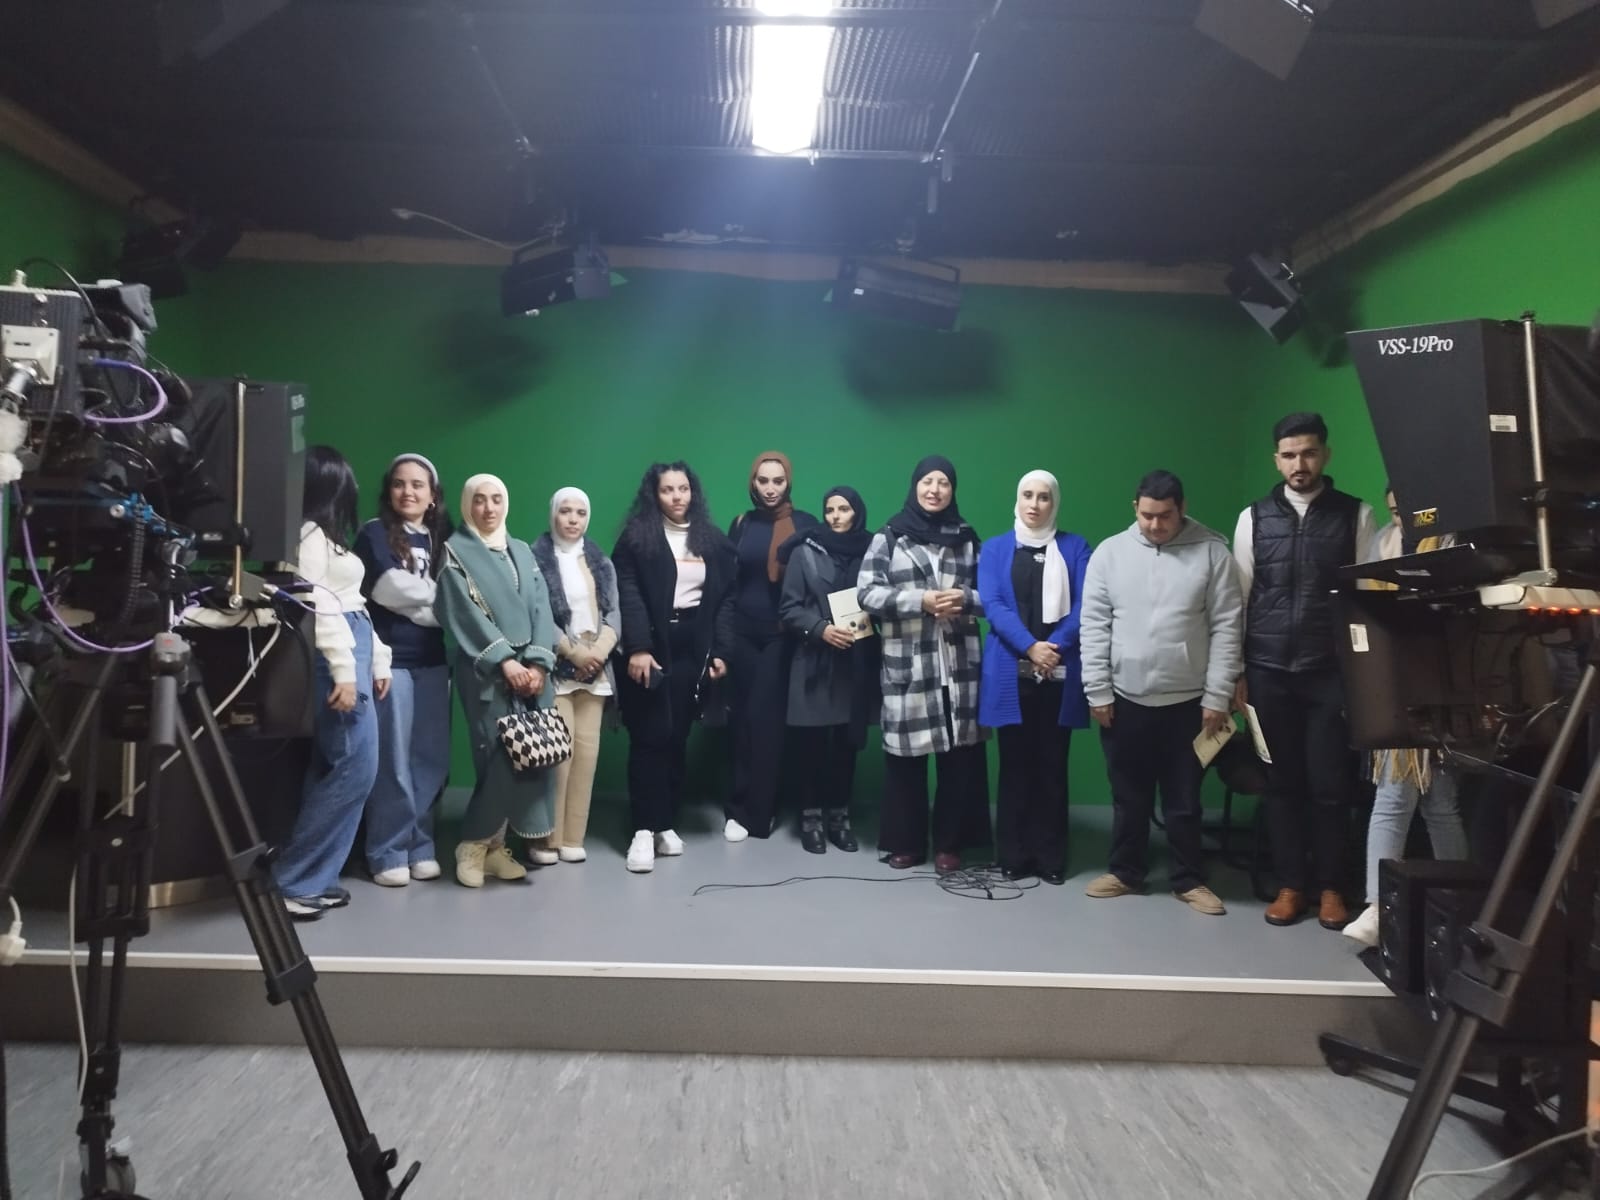 انطلاق دبلوم الإعلام الحديث في جامعة الشرق الأوسط بالتعاون مع وكالة أنباء سرايا الإخبارية - صور 